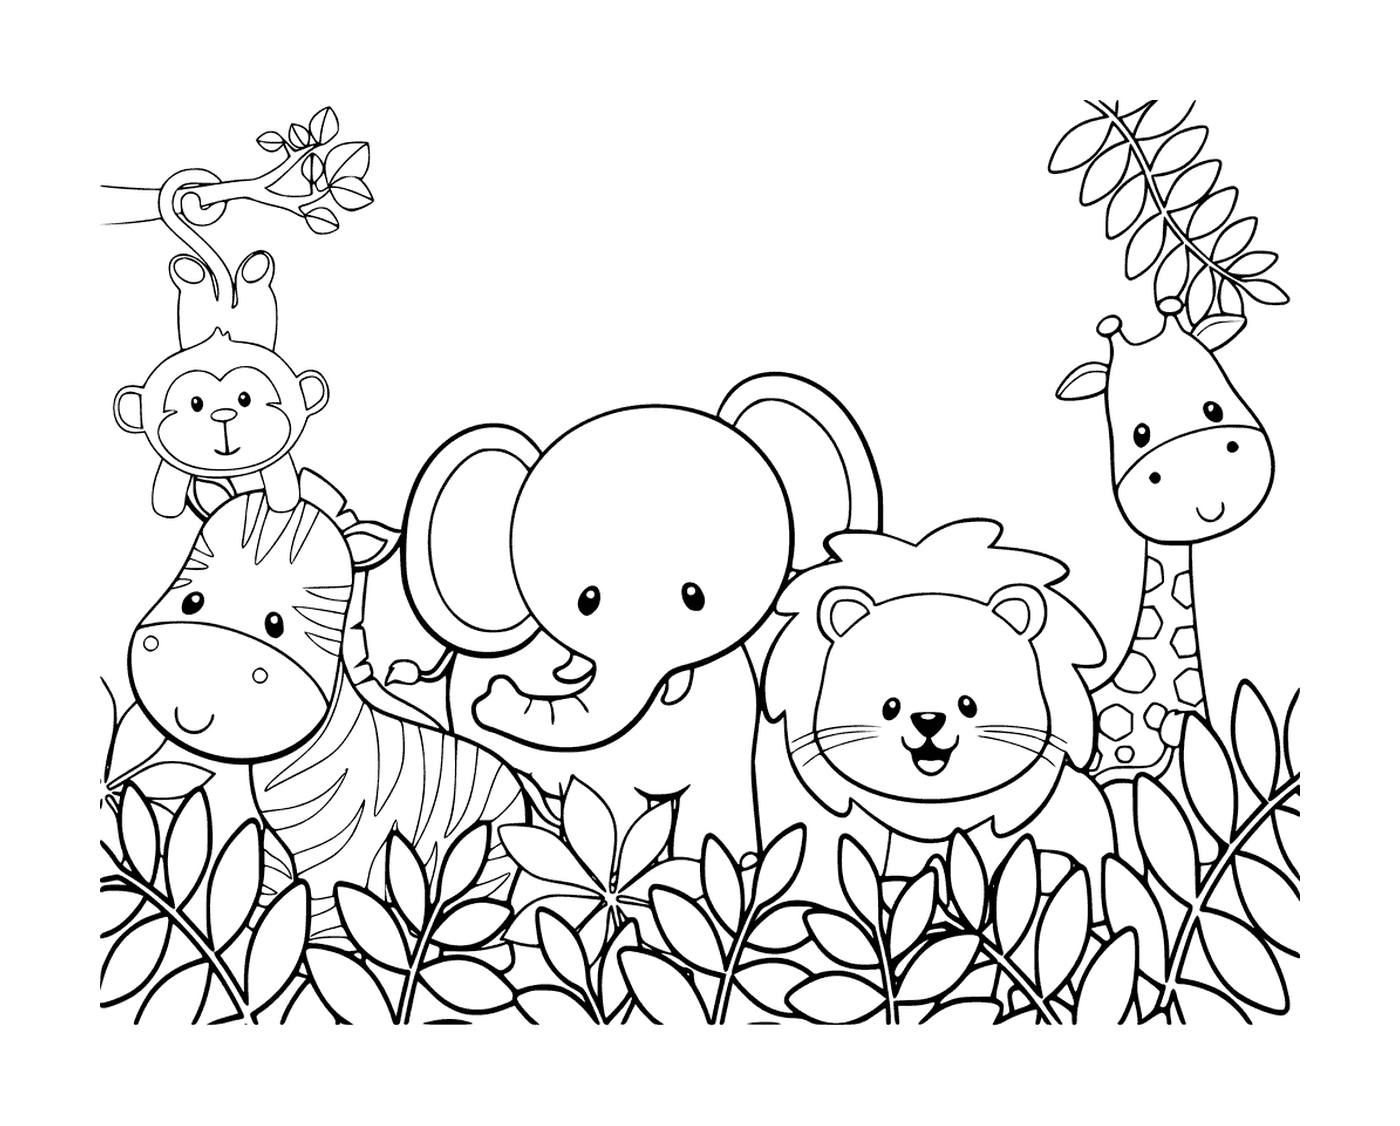  группа животных, стоящих в траве джунглей 